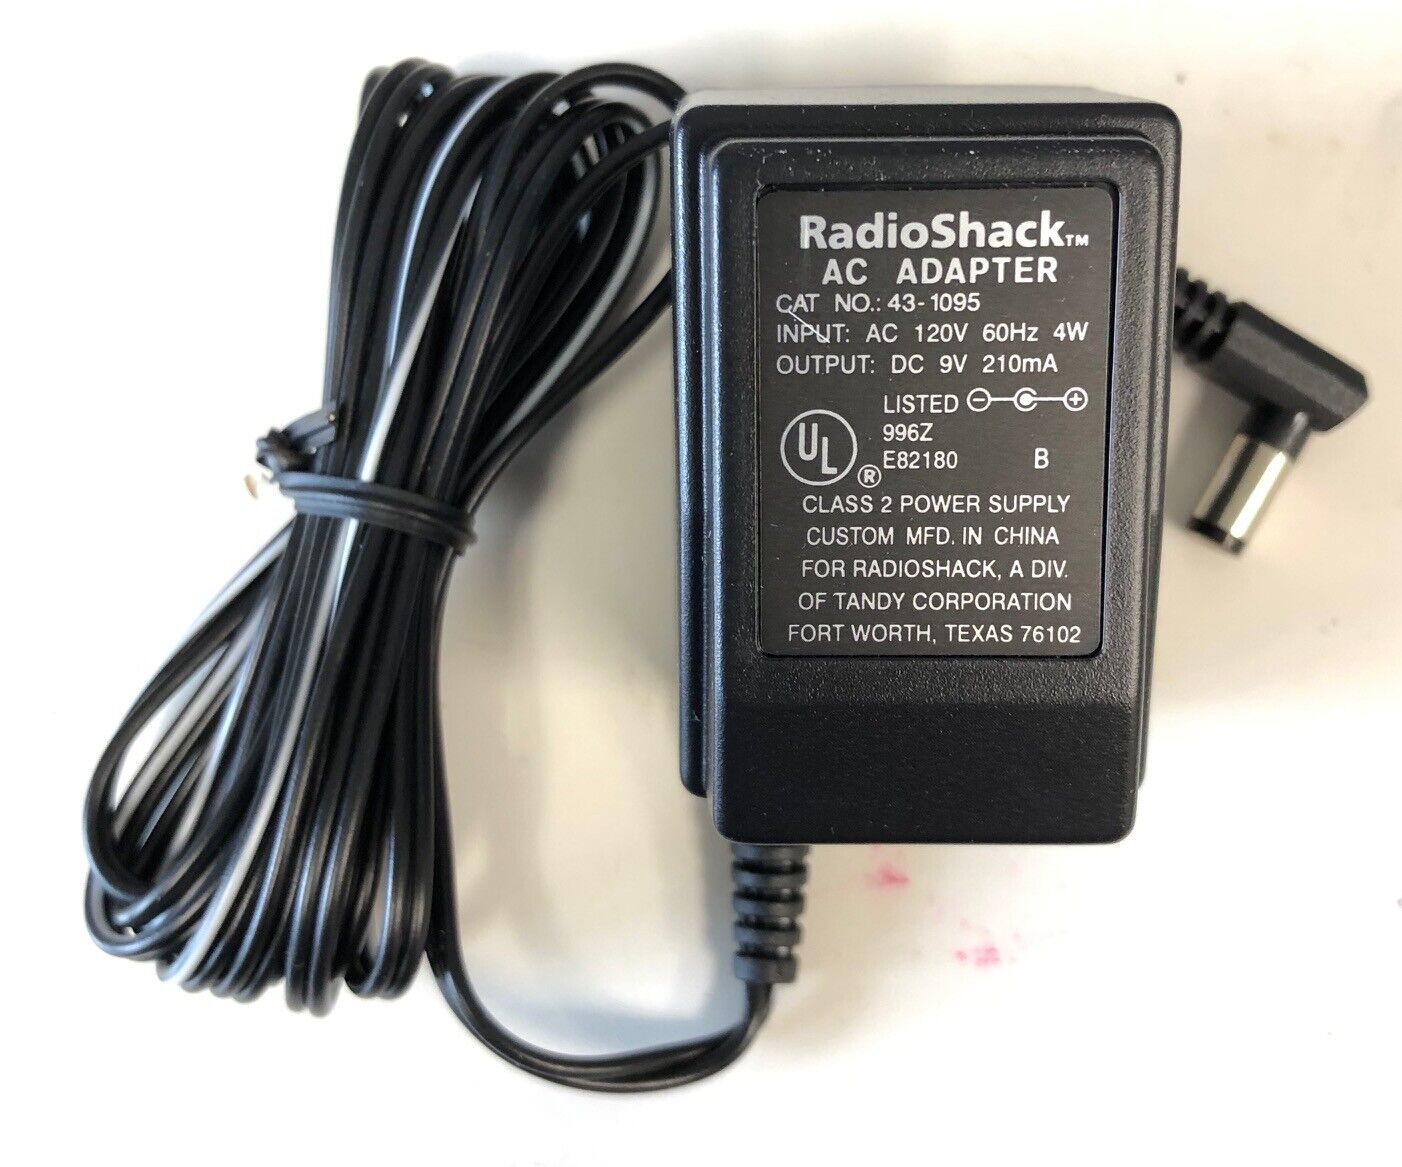 *Brand NEW*RadioShack Output DC 9V 210mA AC Adaptor Cat NO 43-1095 Class 2 Power Supply - Click Image to Close